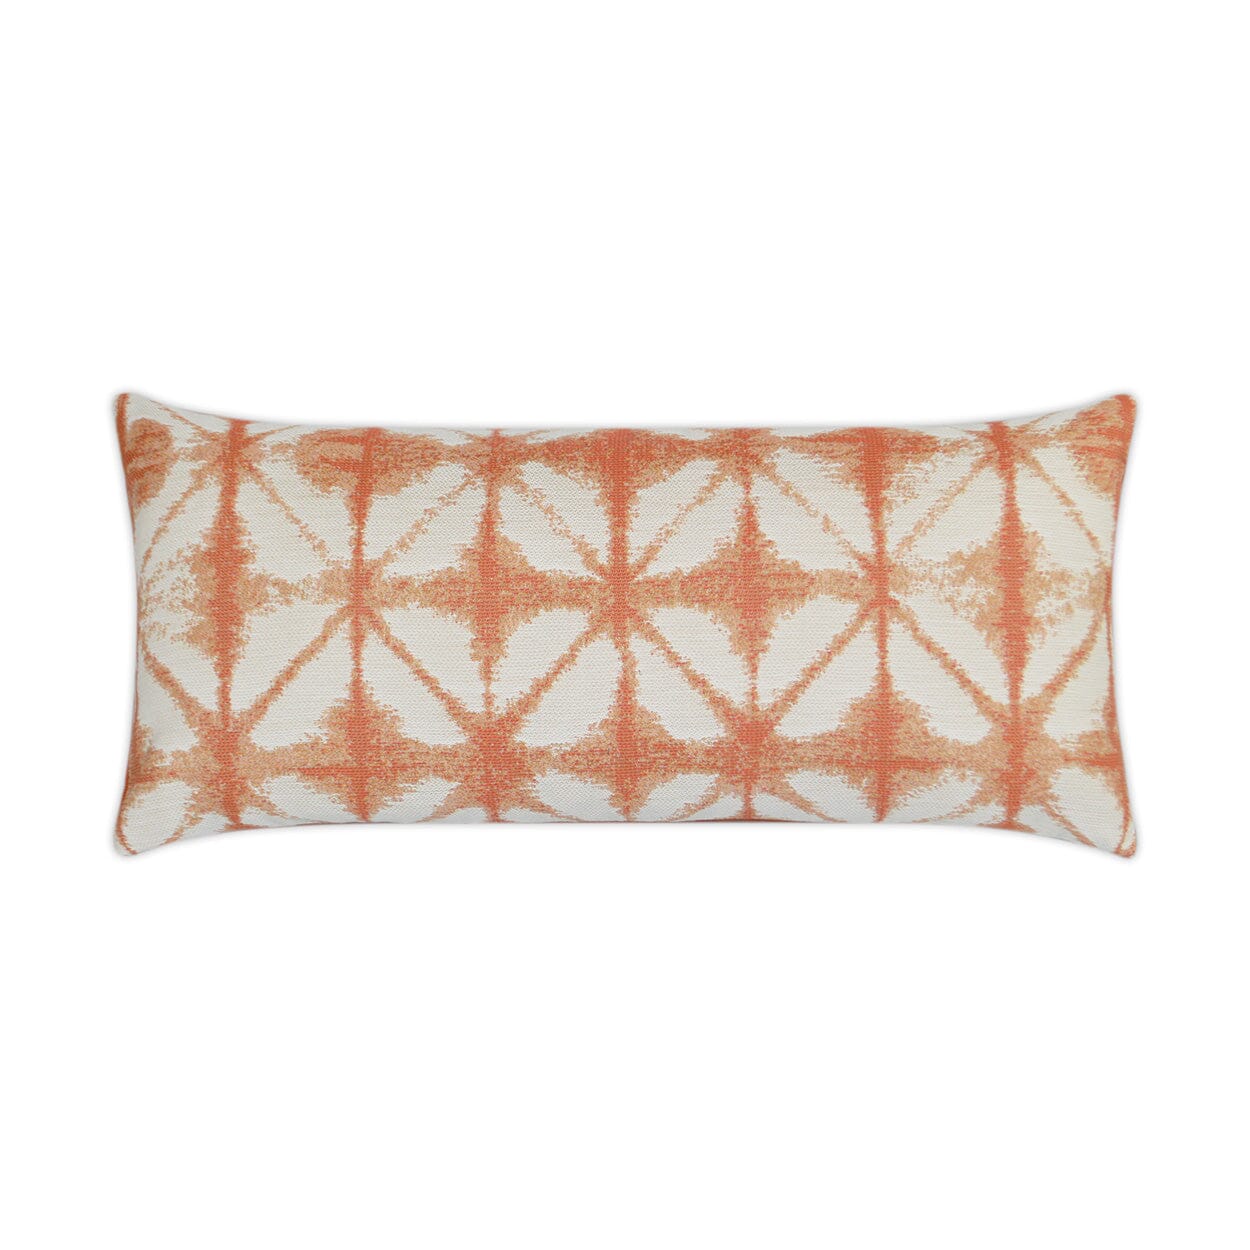 D.V. Kap 12" x 24" Outdoor Lumbar Pillow | Midori Nectarine Pillows D.V Kap Outdoor